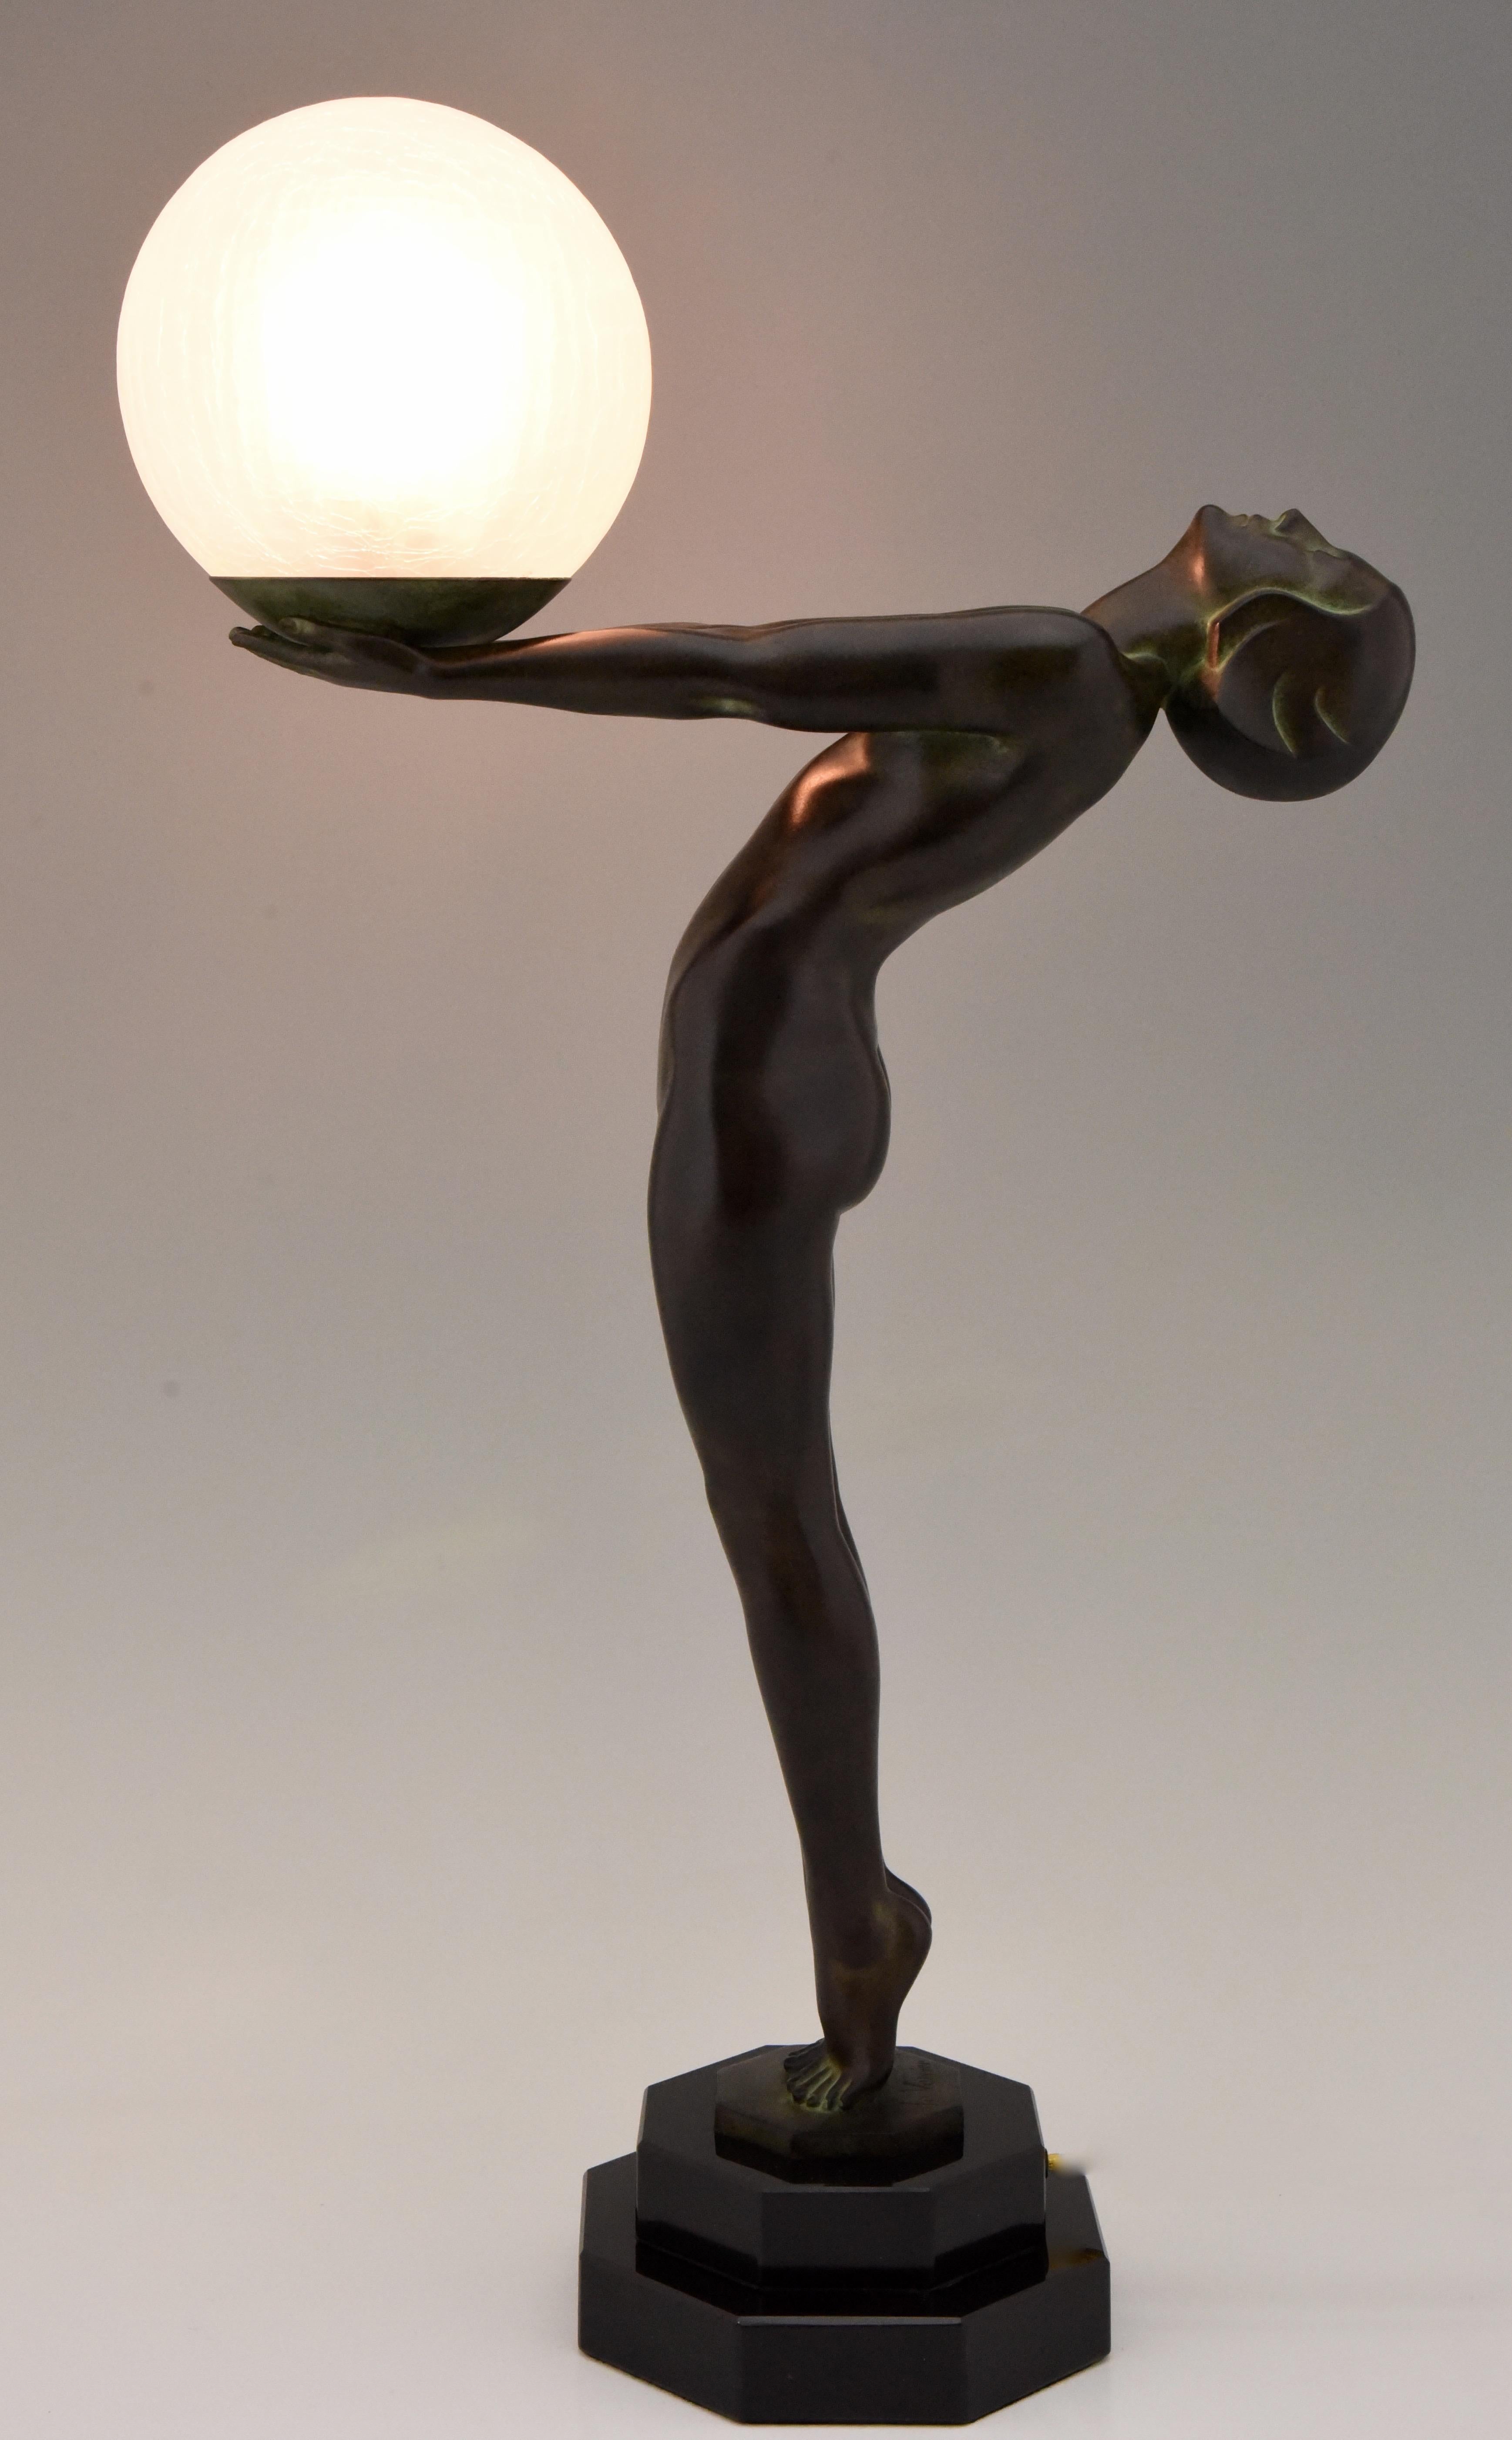 Beeindruckende Art-Déco-Tischlampe in Form eines stehenden Aktes, der einen Glasschirm hält, CLarté, Lumina.
Maße: H. 65 cm oder 25,6 Zoll hoch.
Entworfen von Max Le Verrier in Frankreich, 1928.
Originaler posthumer zeitgenössischer Guss in der